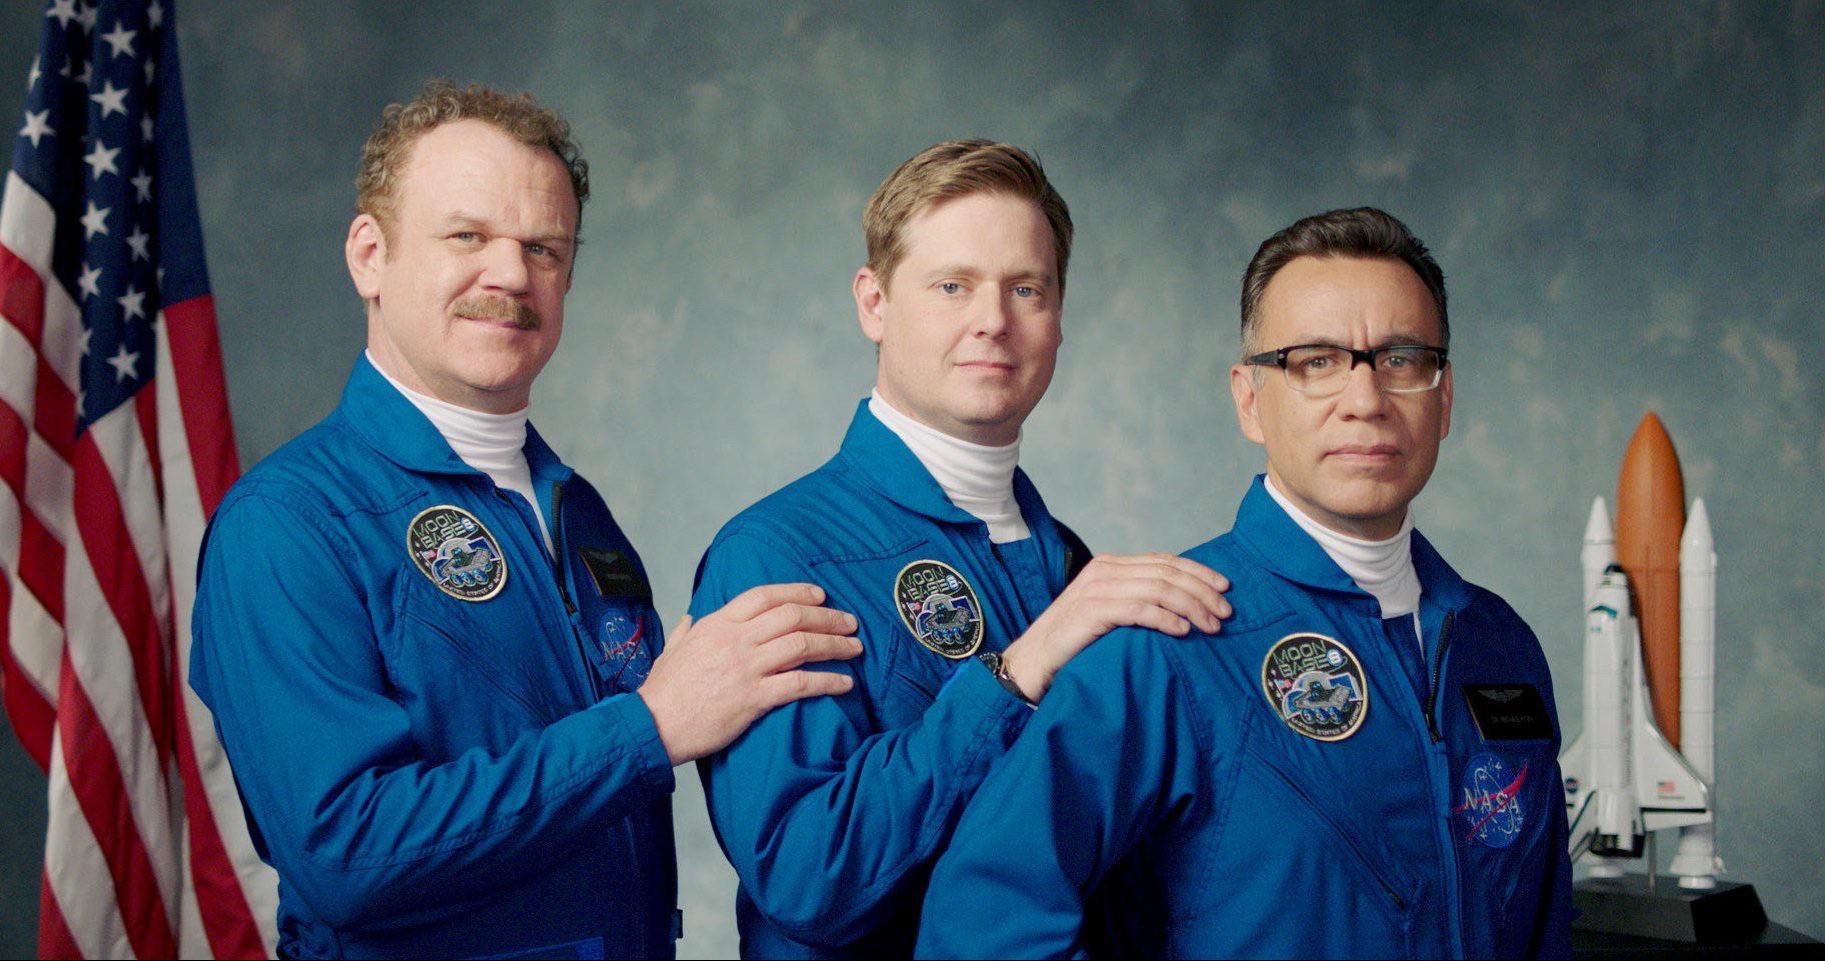 Moonbase 8 NASA Comedy Starring John C. Reilly, Tim Heidecker &amp; Fred Armisen Goes to Showtime